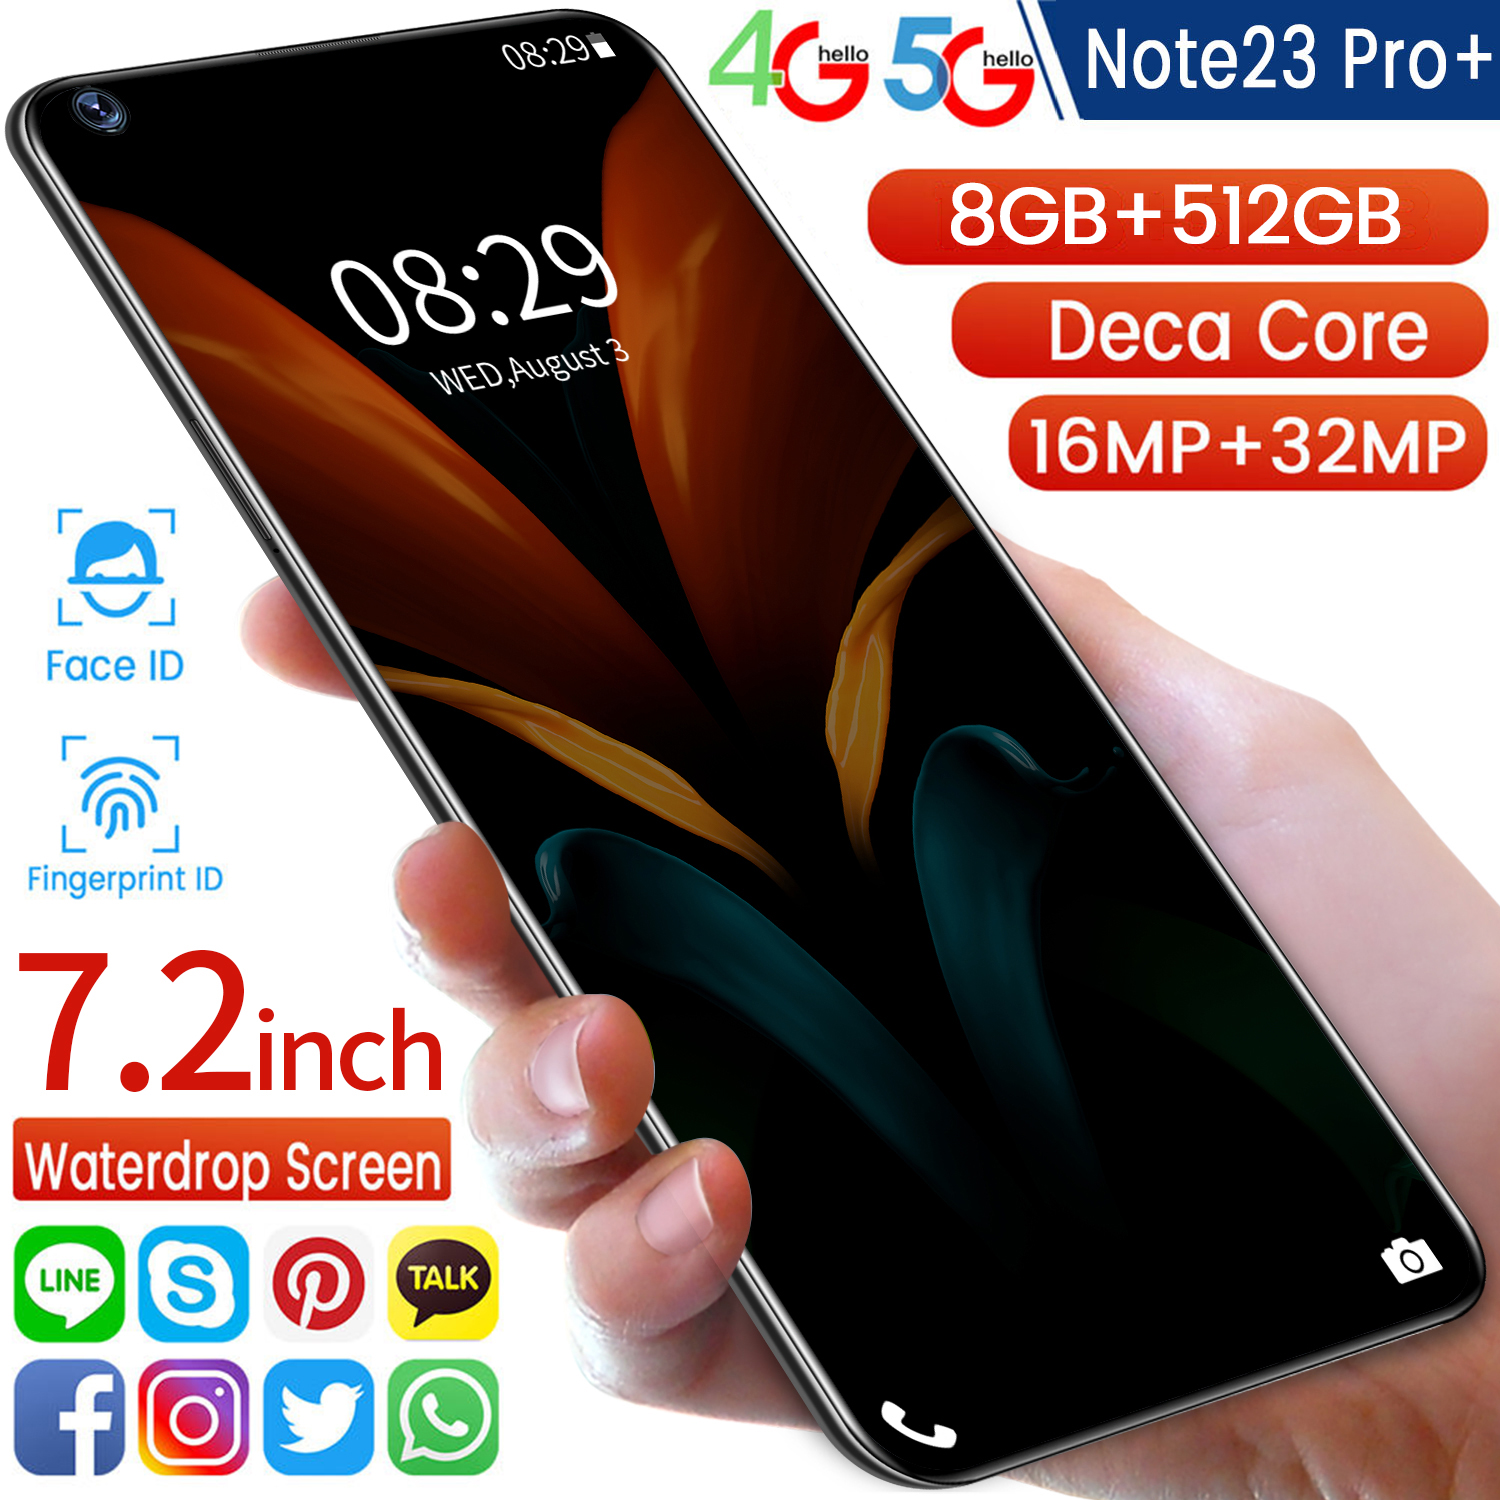 Note23 Pro Wifi Dewdrop Display Android Smartphoneโทรศัพท์มือถือ มือถือ โทรศัพท์ โทรสับ โทรศัพท์เกม สมาร์ทโฟน มือถือราคาถูก โทรศัพท์สำหรับเล่นเกม โทรศัพท์สมาร์ท โทรศัพท์มือถือถูกๆ